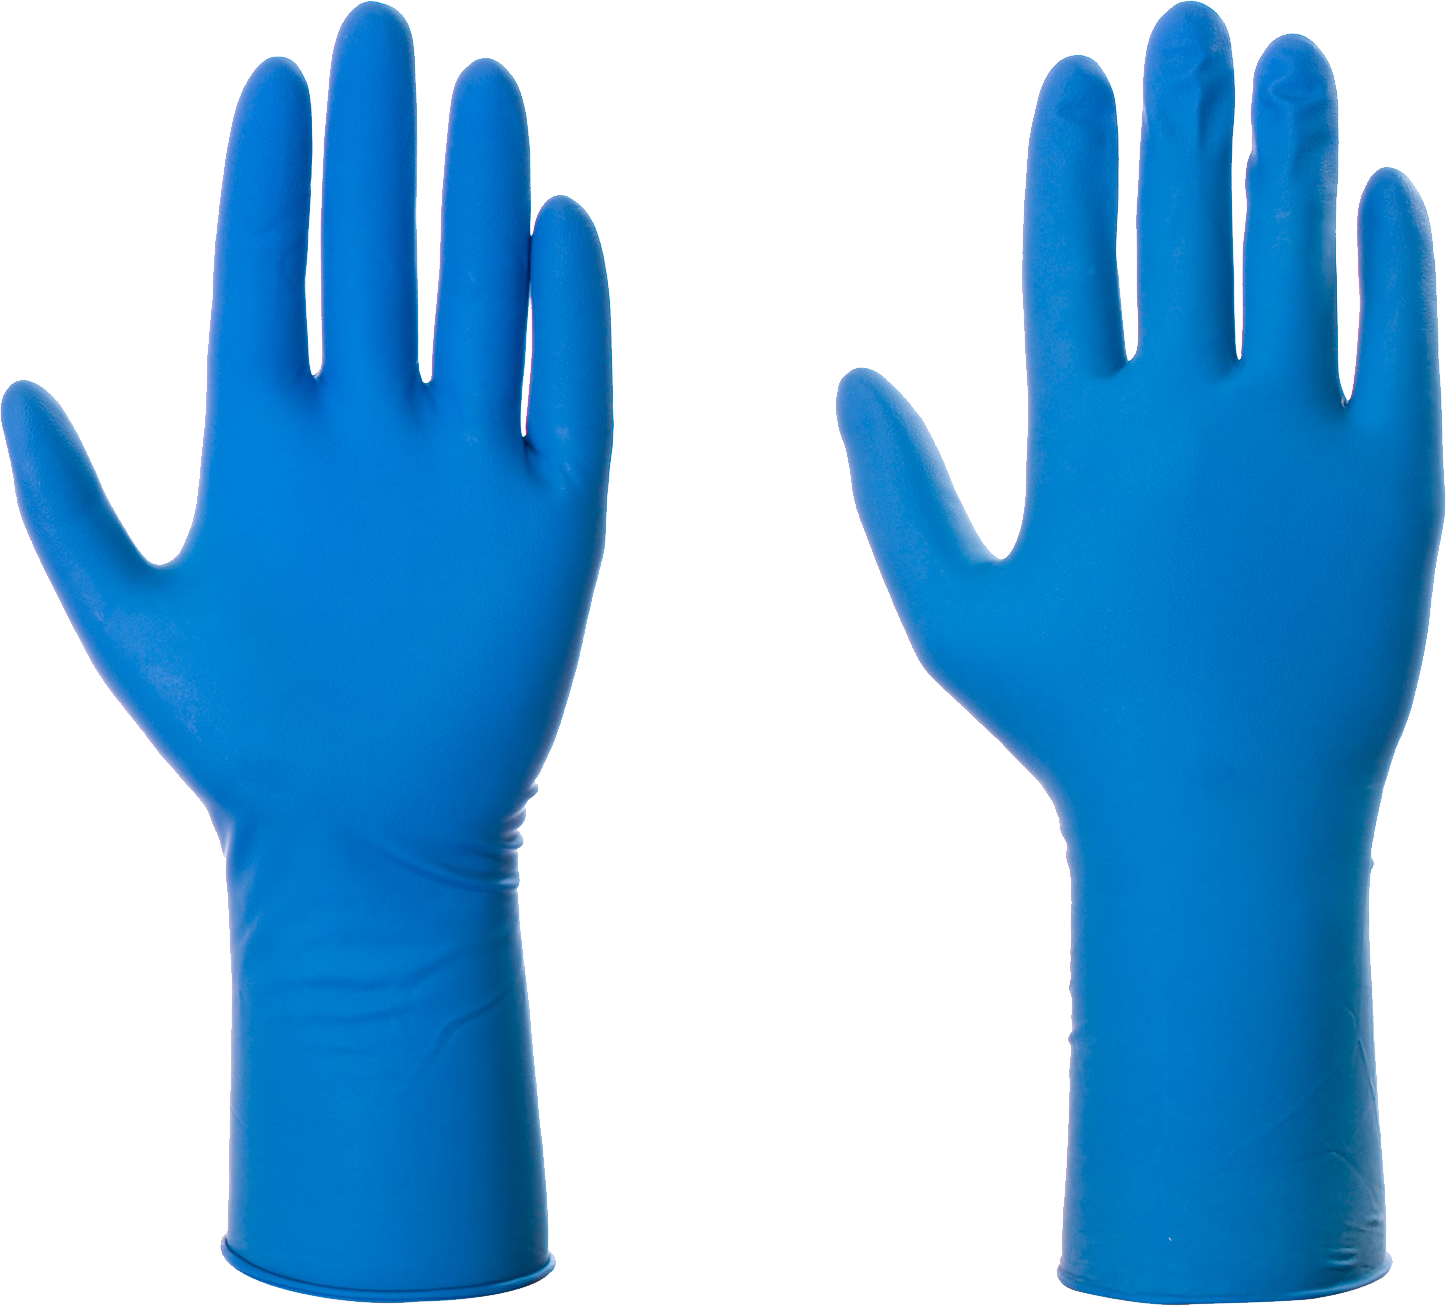 Medical Gloves PNG Free File Download